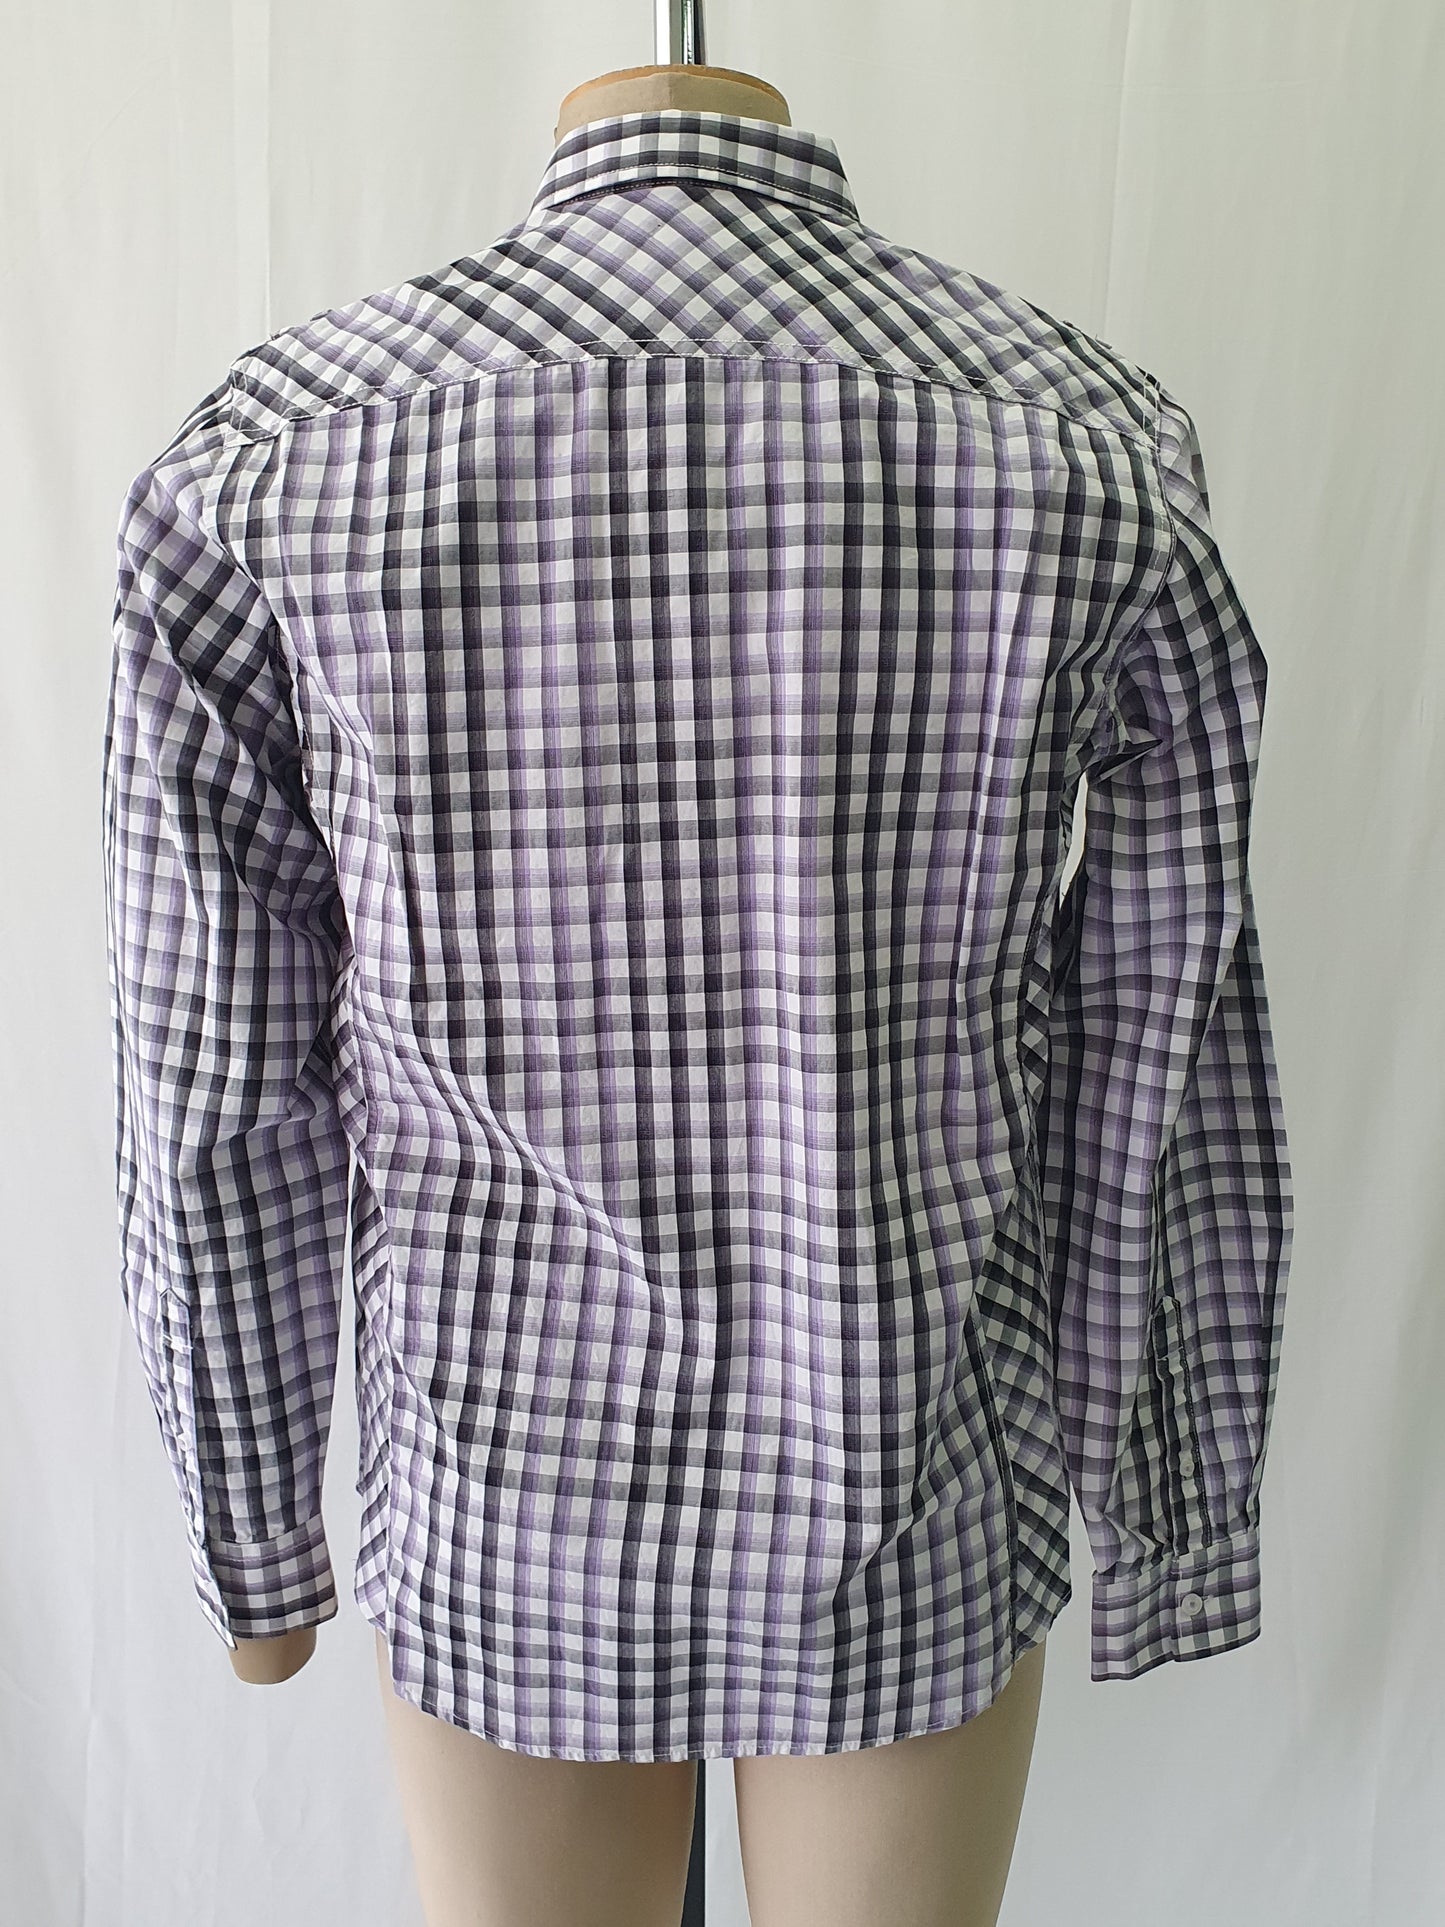 PW5873132s - Pelaco Purple & Black check casual shirt - Slim Fit